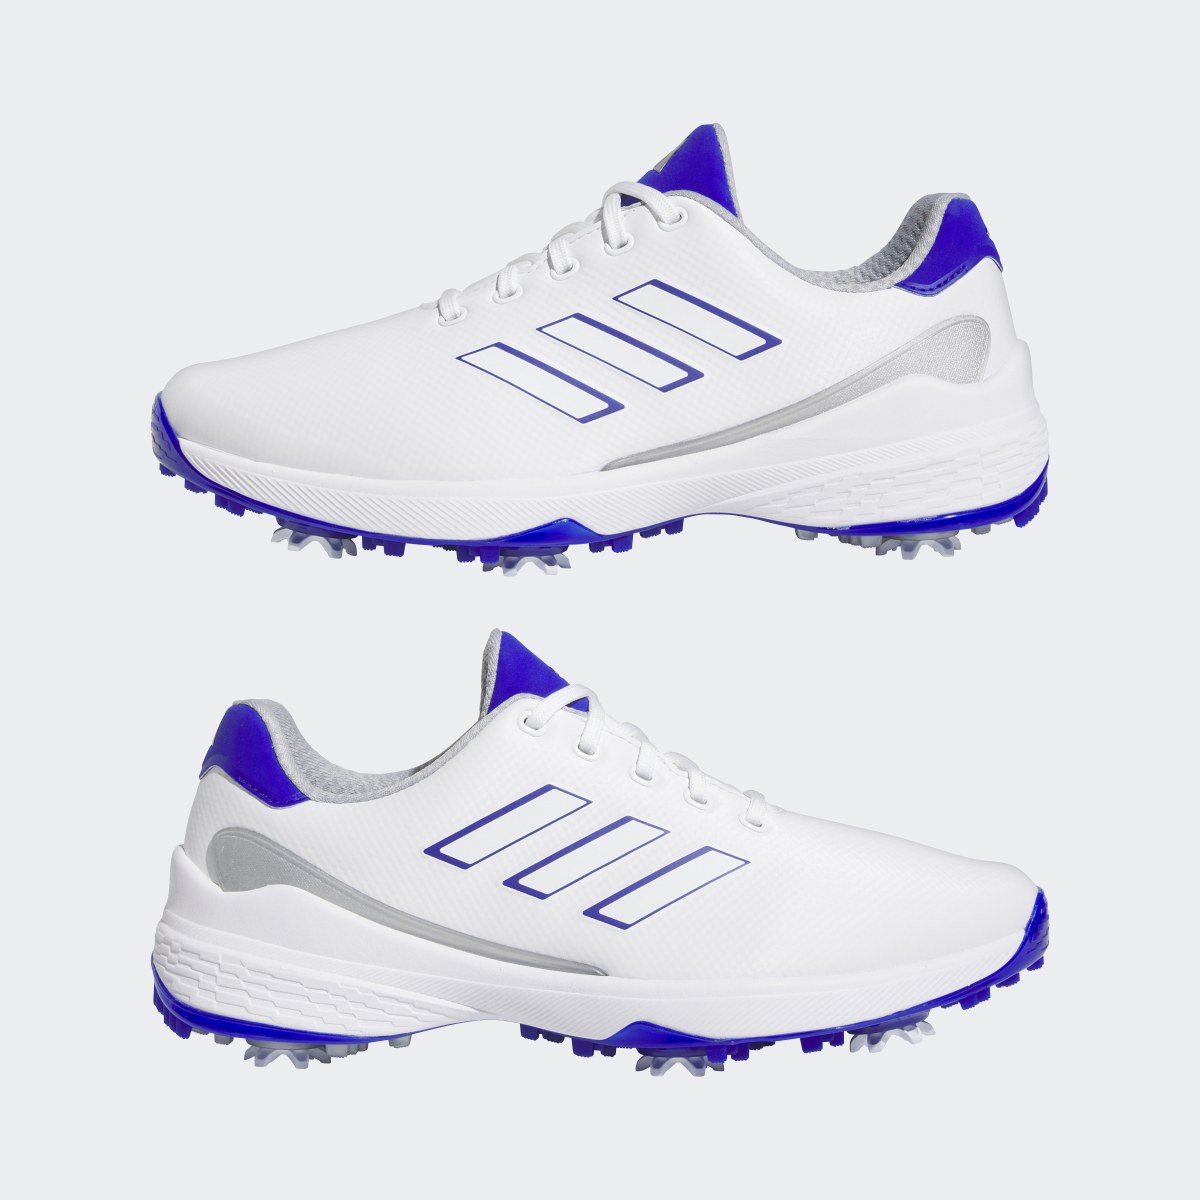 Adidas ZG23 Golf Shoes. 14